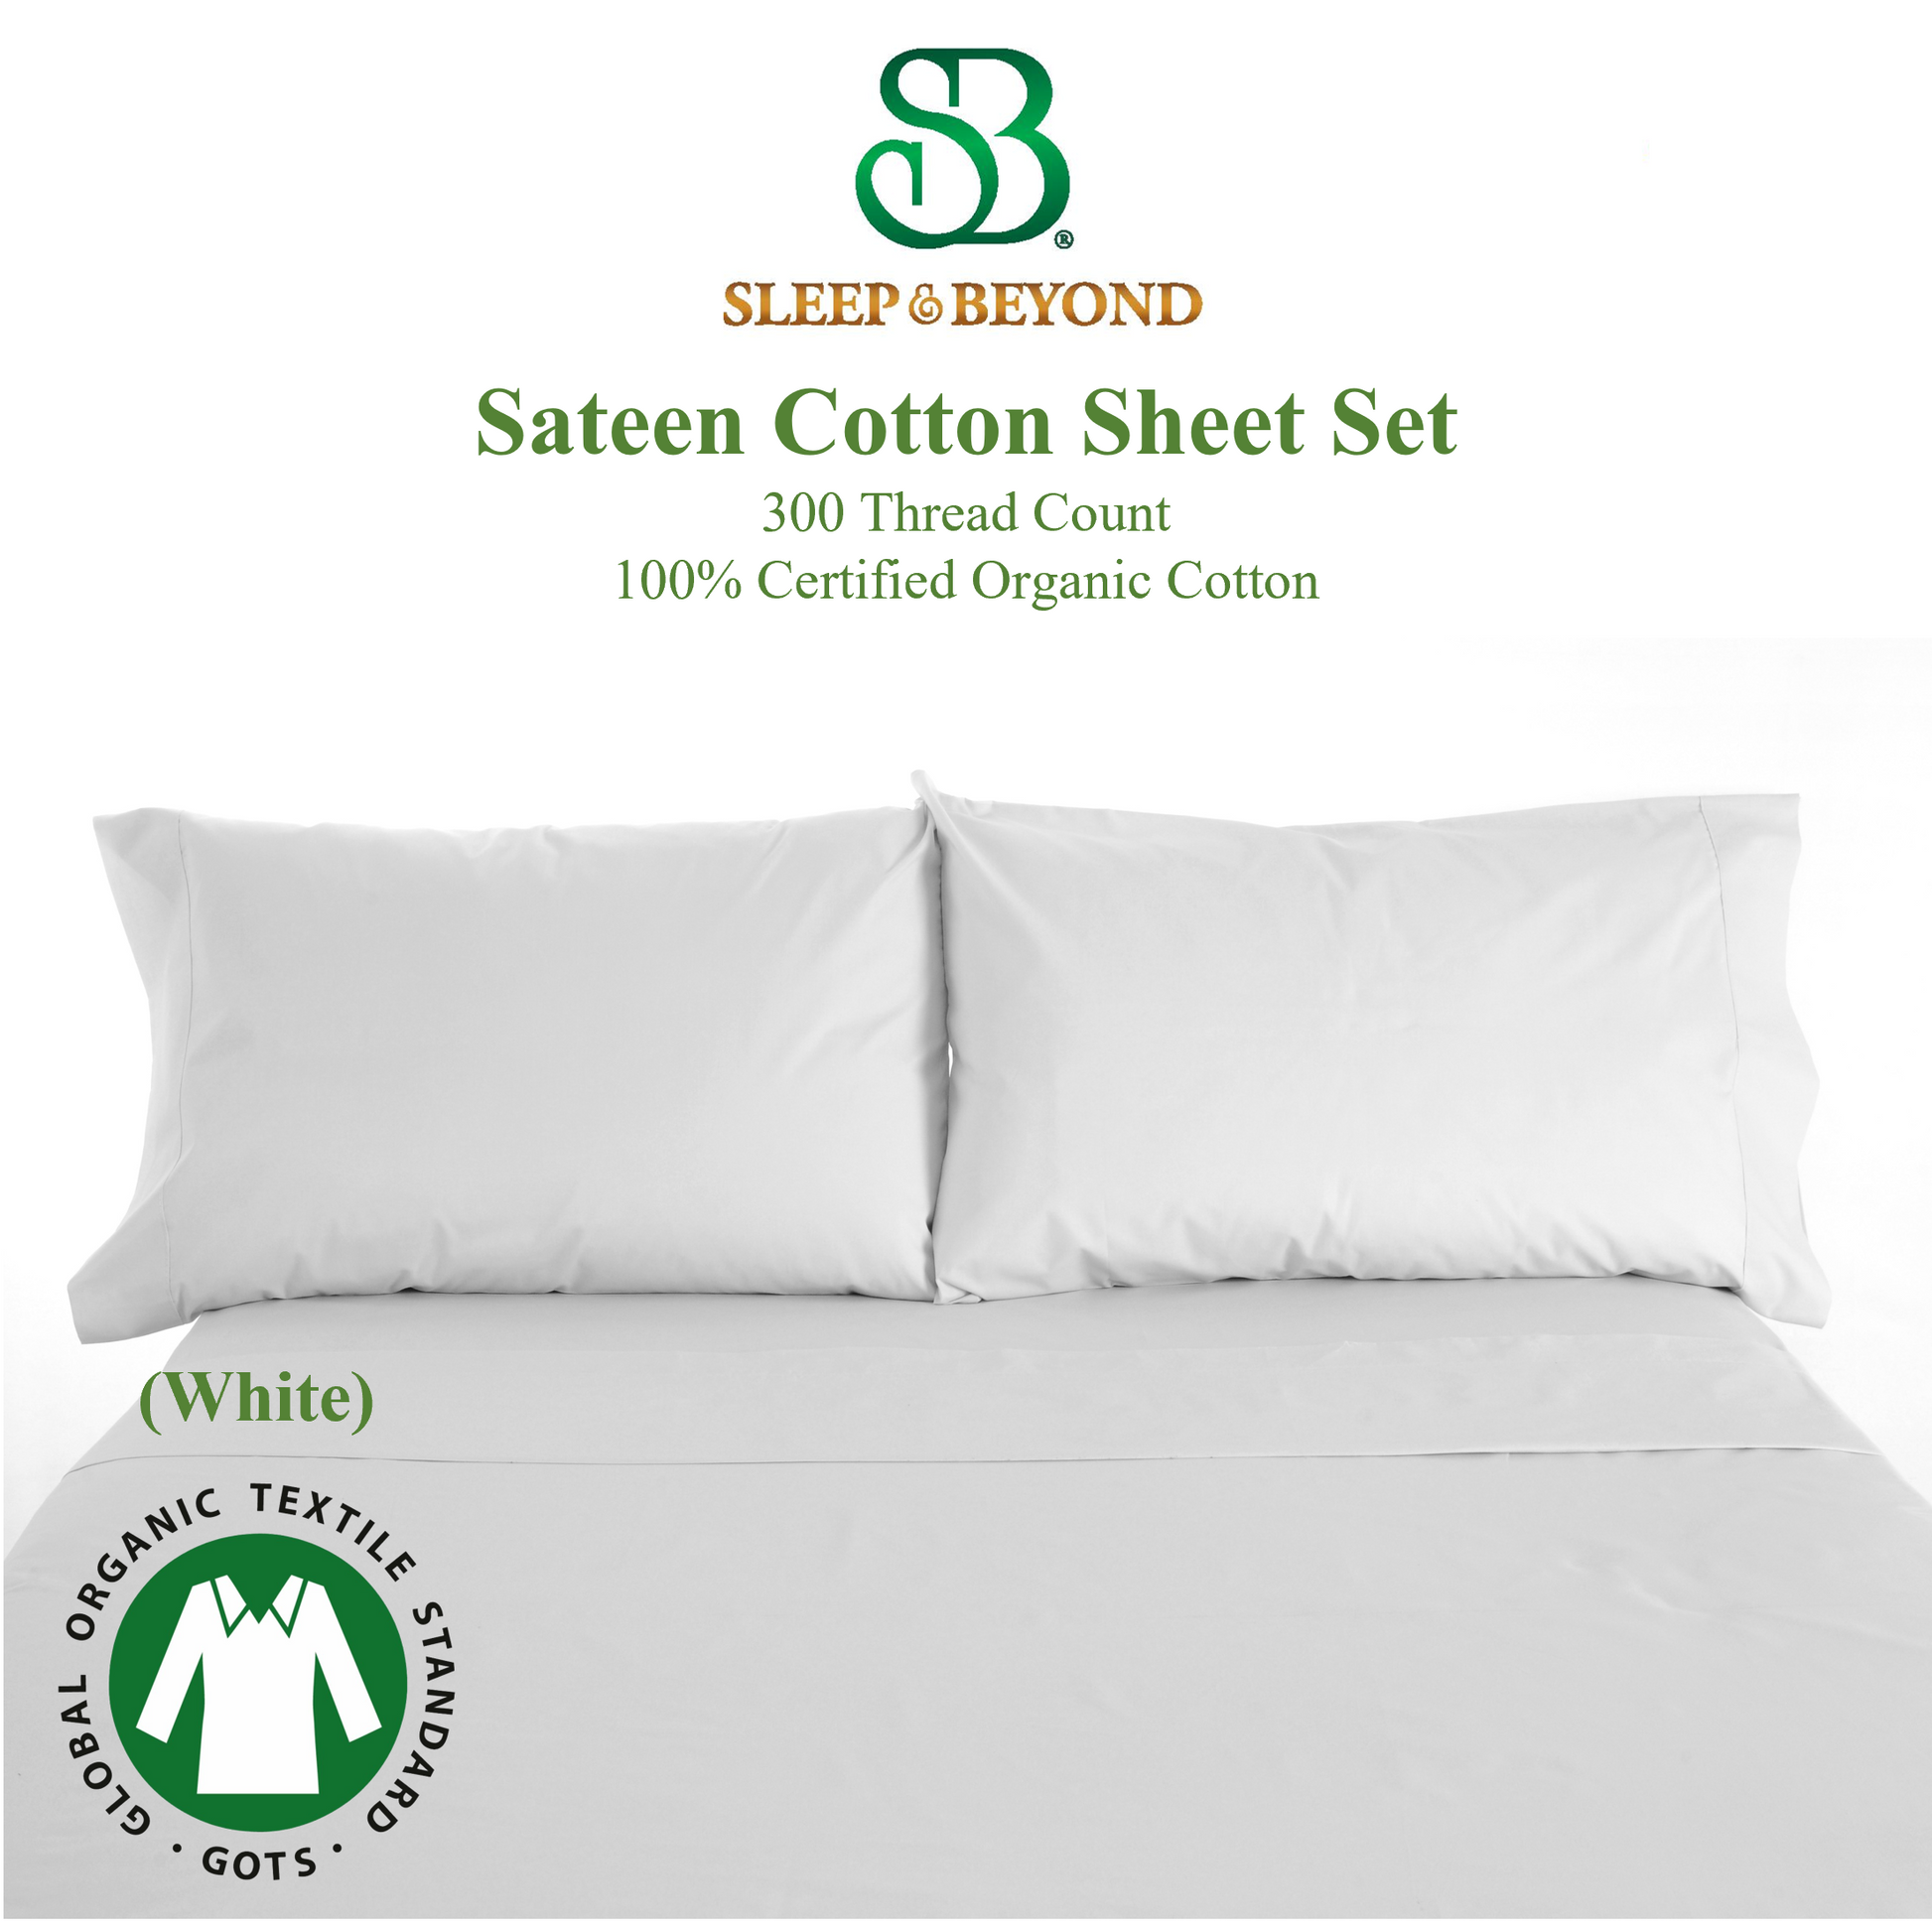 Sateen Cotton Sheet Set